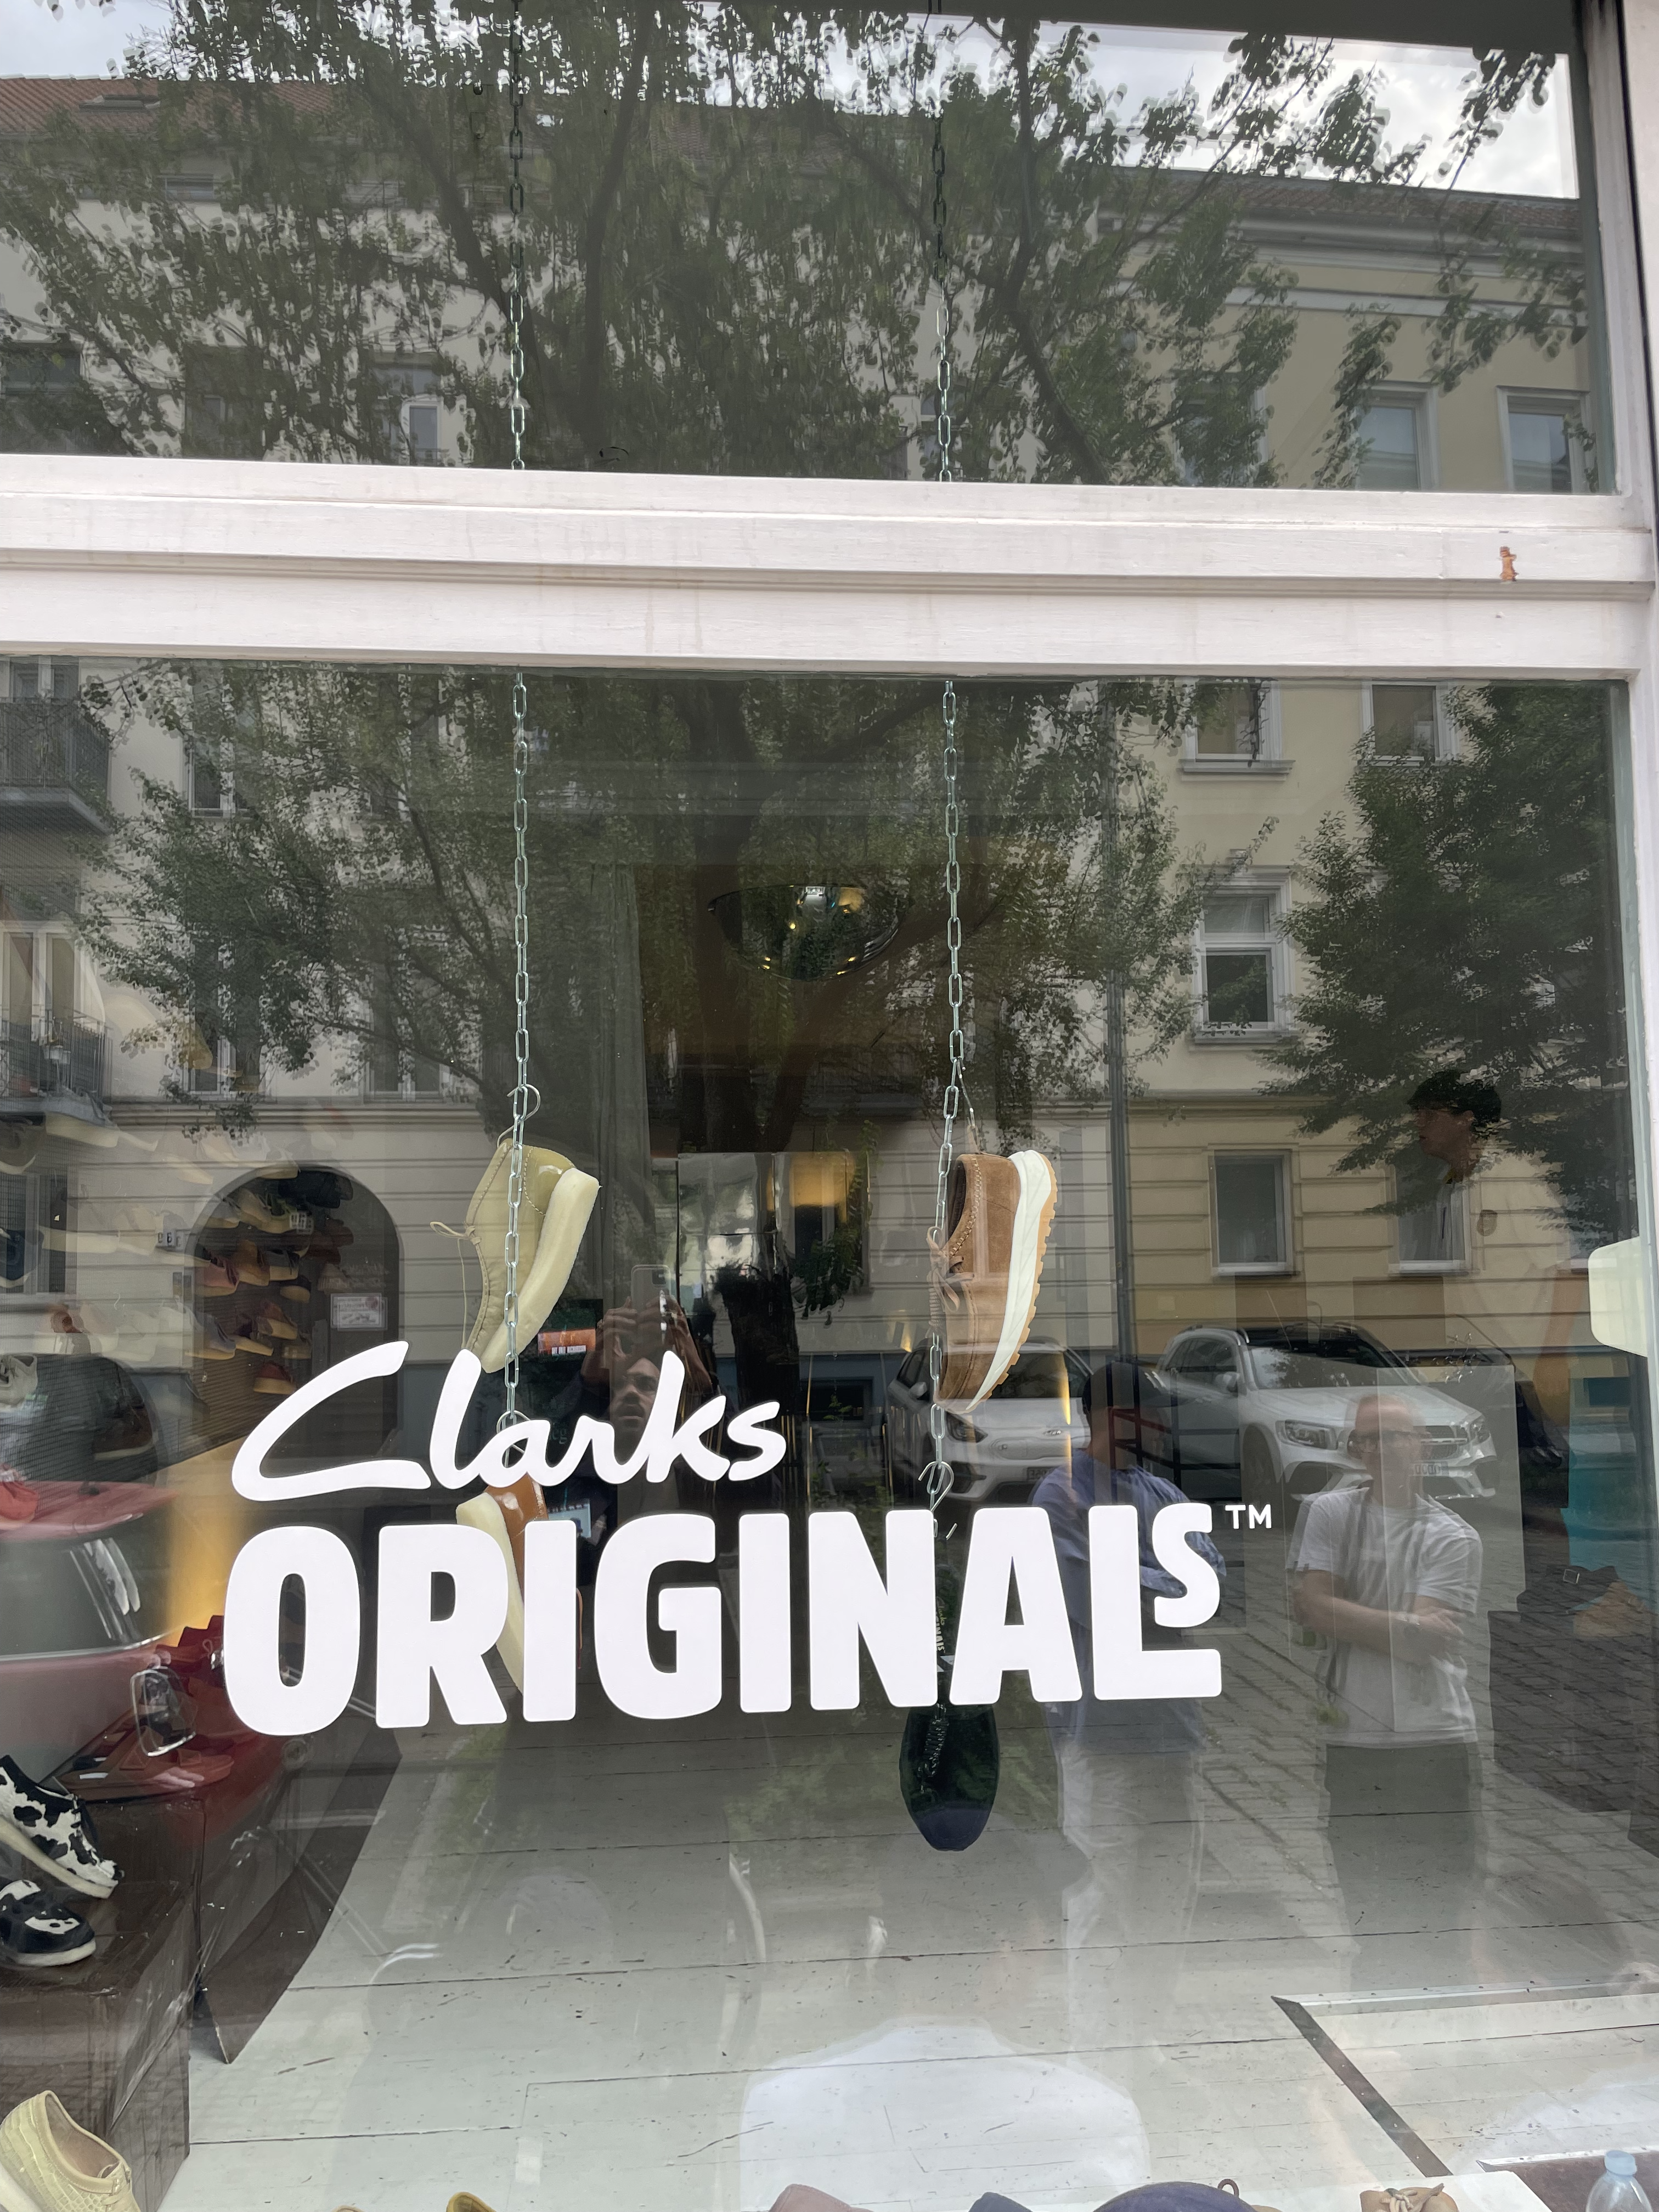 Clarks, Dinner, Clarks Originals, Retailer